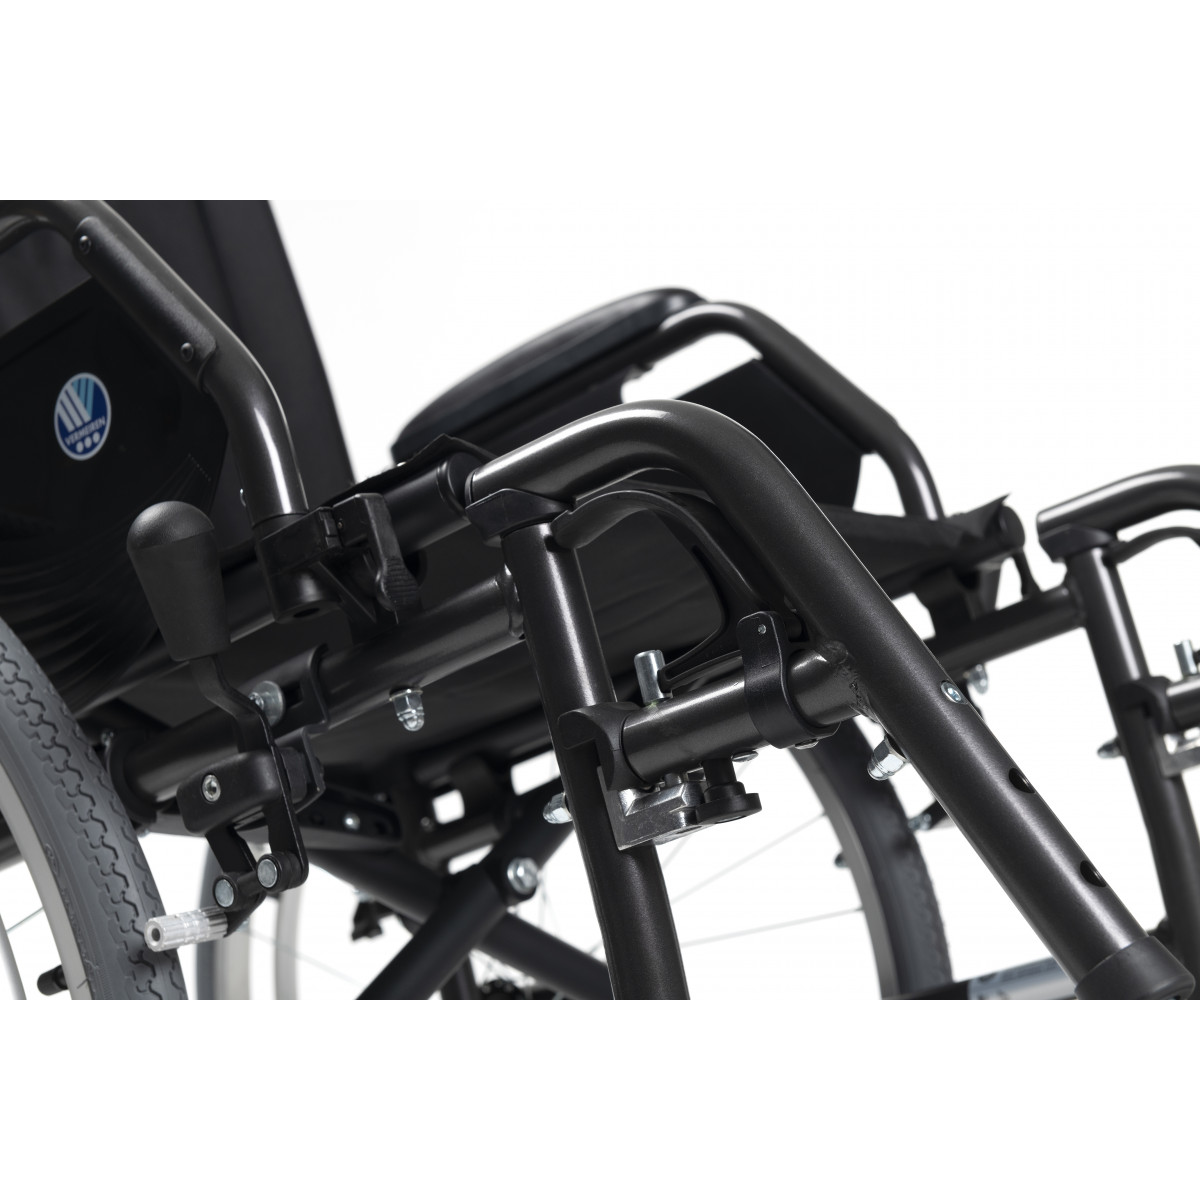 Кресло-коляска для инвалидов Vermeiren Jazz S50